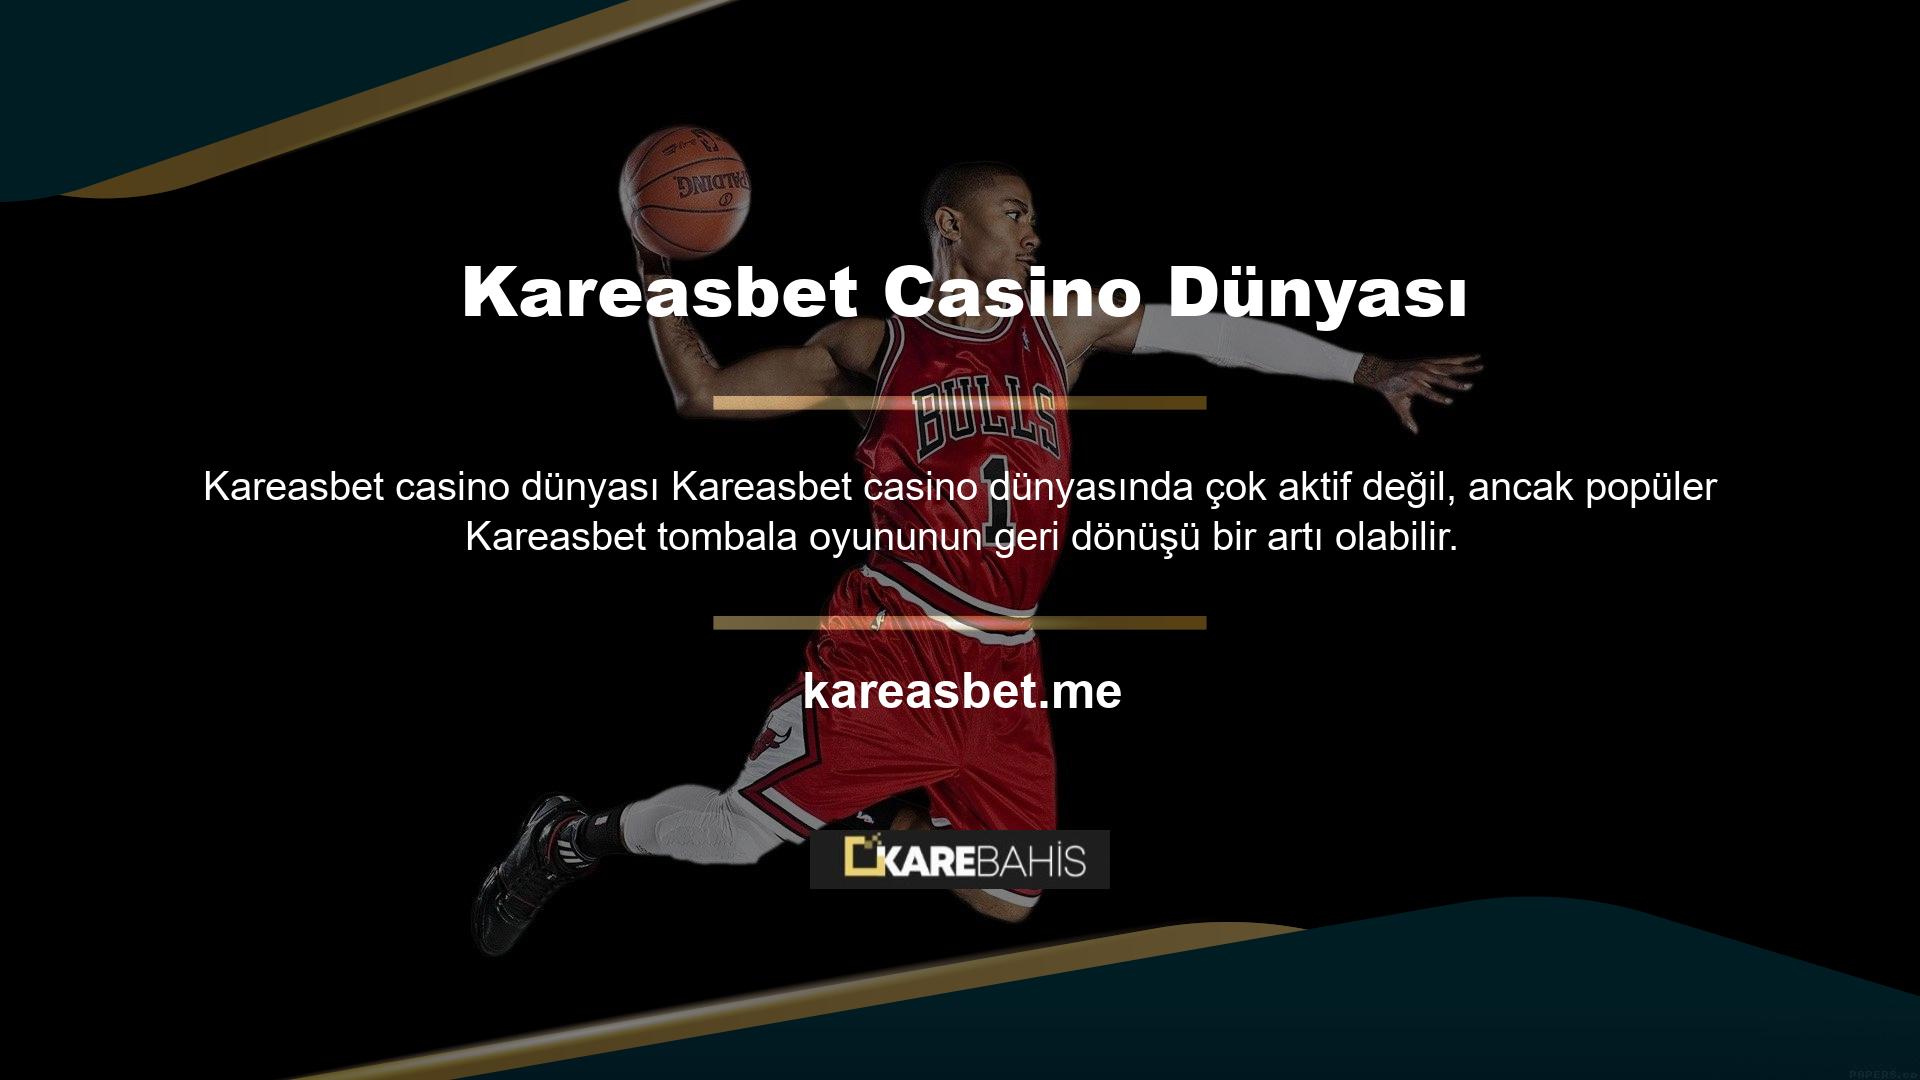 Kareasbet web sitesindeki tüm teklifleri görmek ve bingonun faydaları hakkında daha fazla bilgi edinmek için bizi takip edin